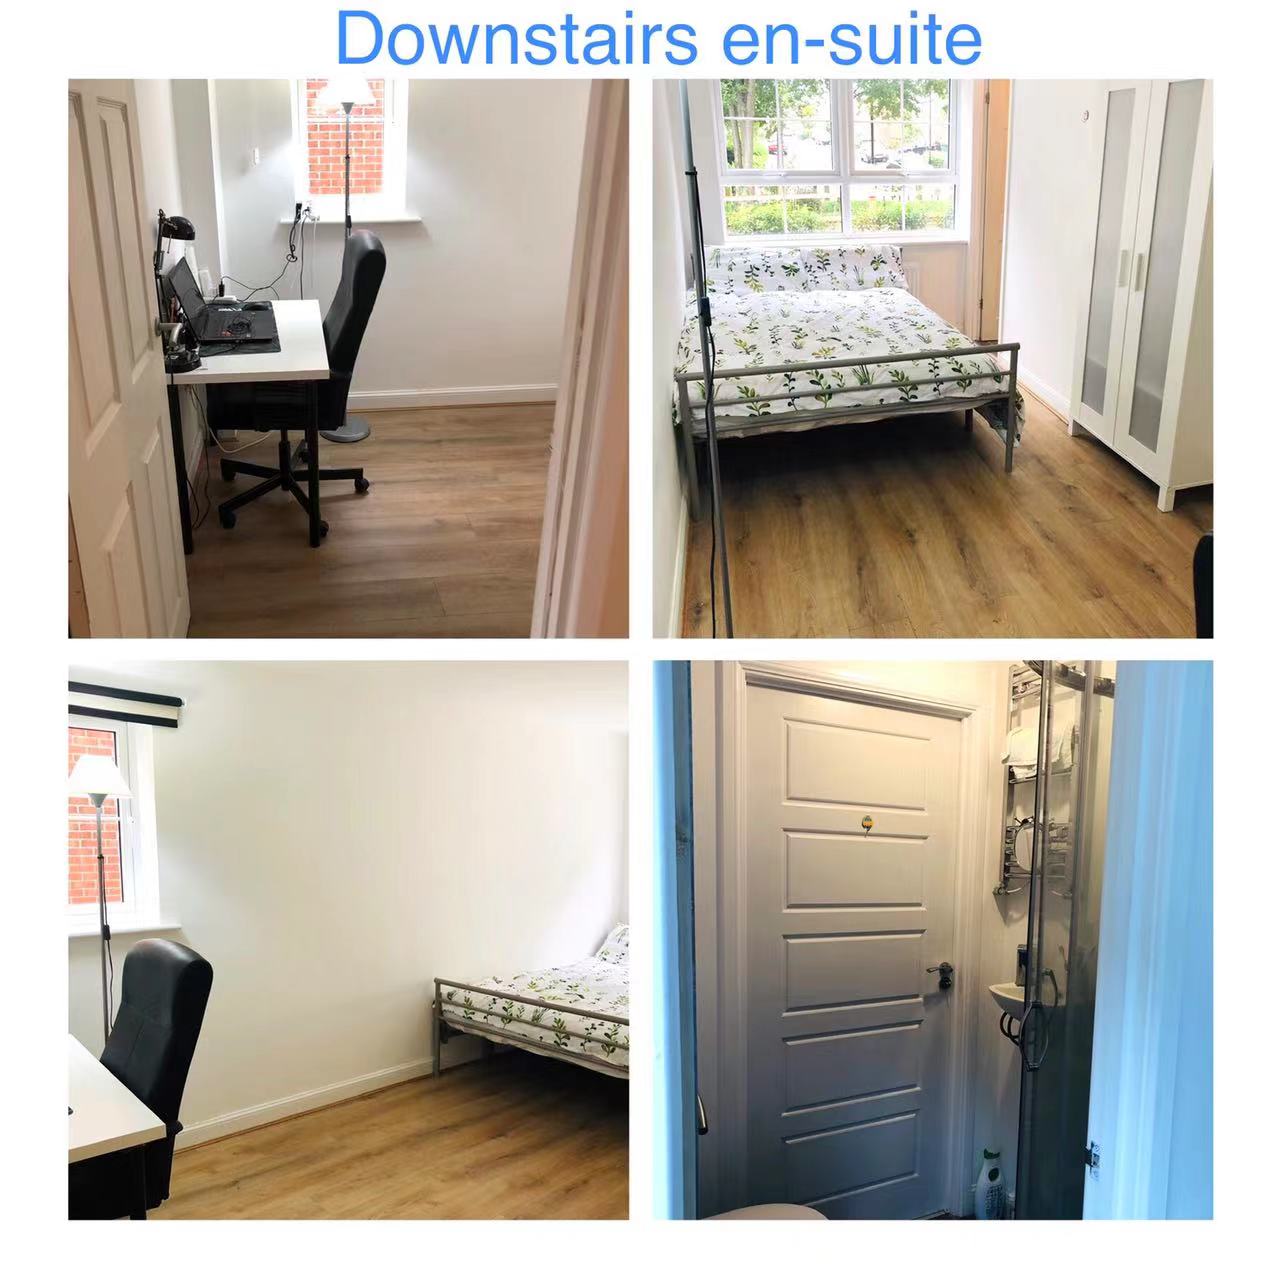 Downstairs Enstuite